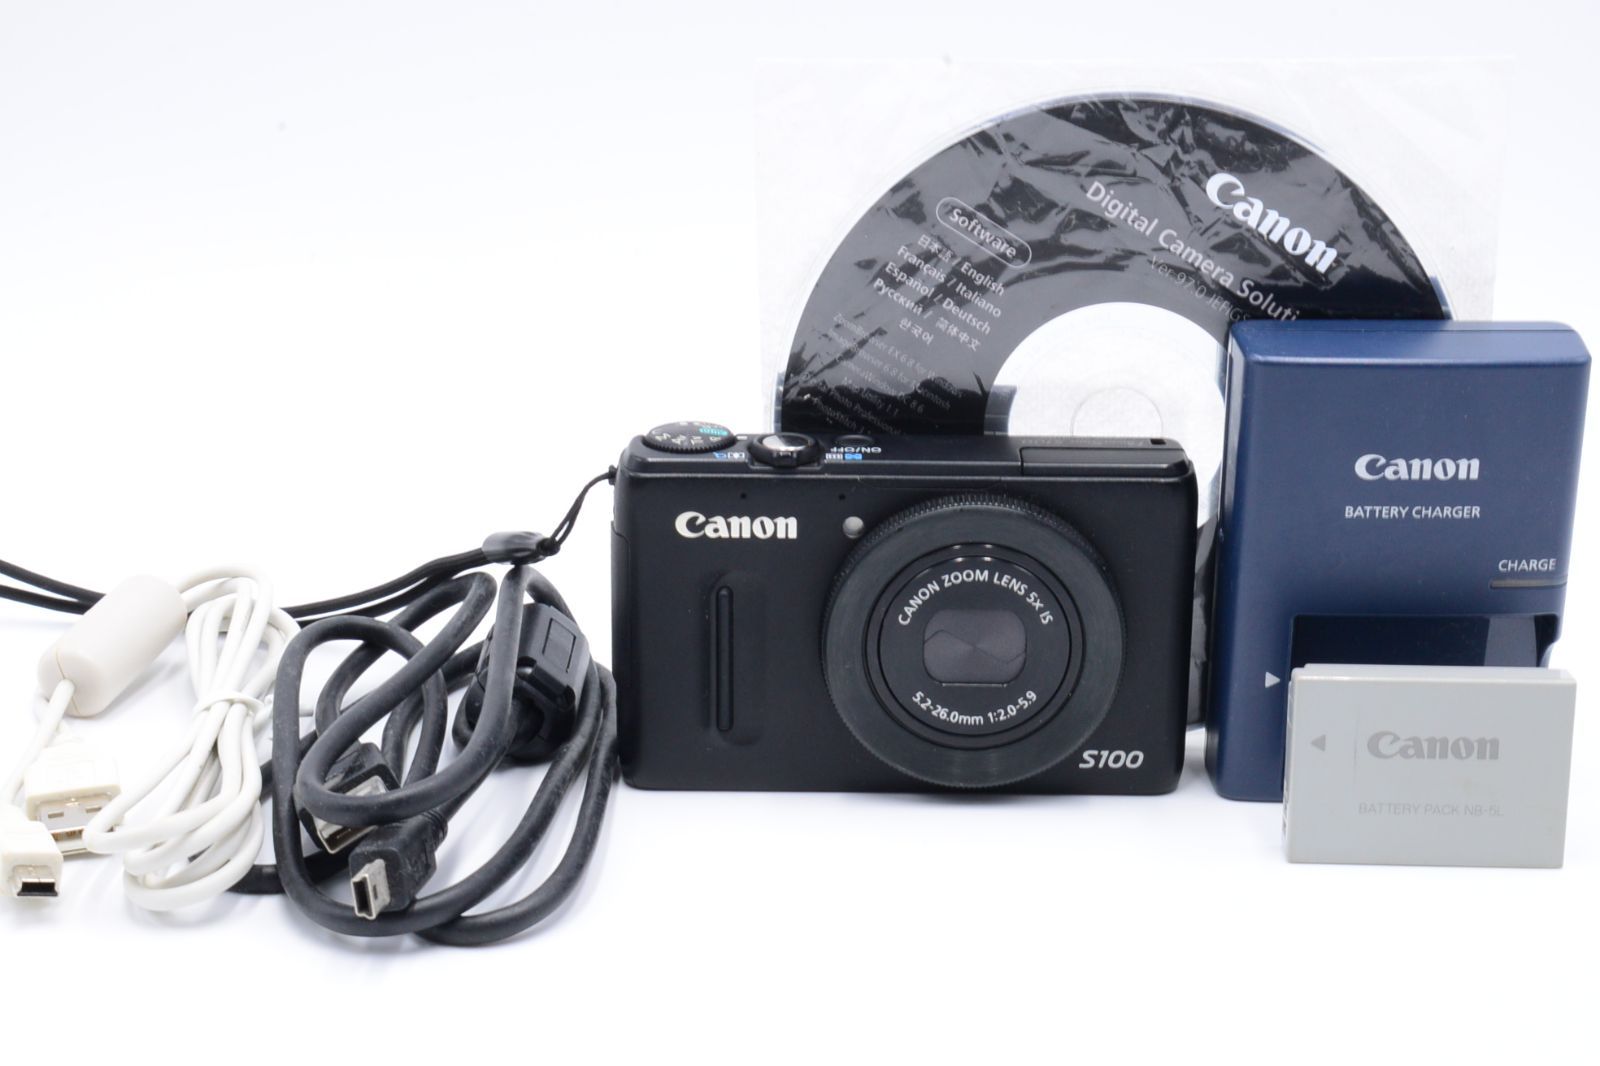 ついに入荷 Canon デジタルカメラ PowerShot S100 シルバー PSS100 SL 1210万画素 広角24mm 光学5倍ズーム 3. 